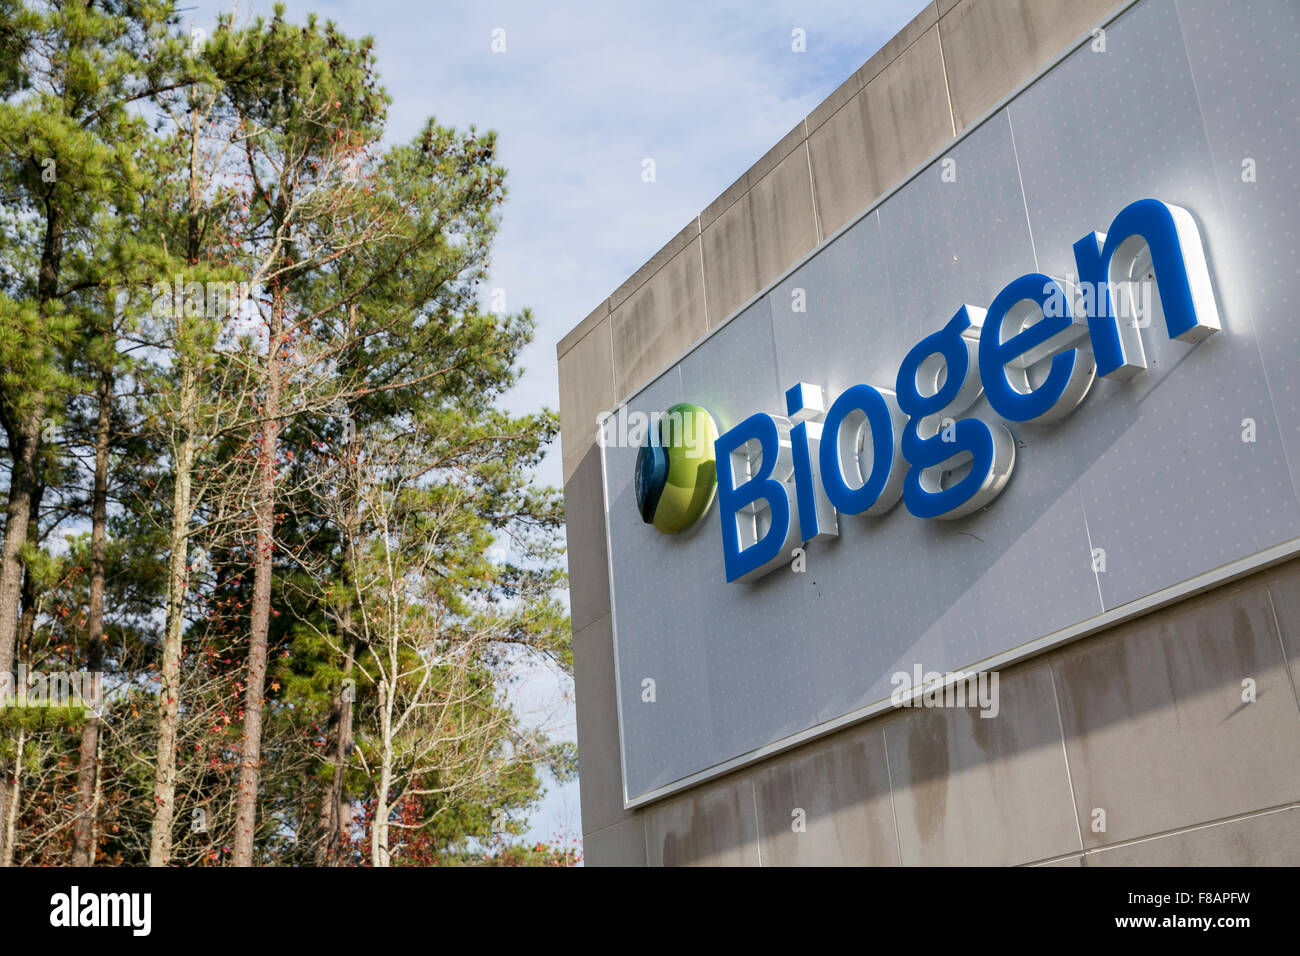 Biogen immagini e fotografie stock ad alta risoluzione - Alamy